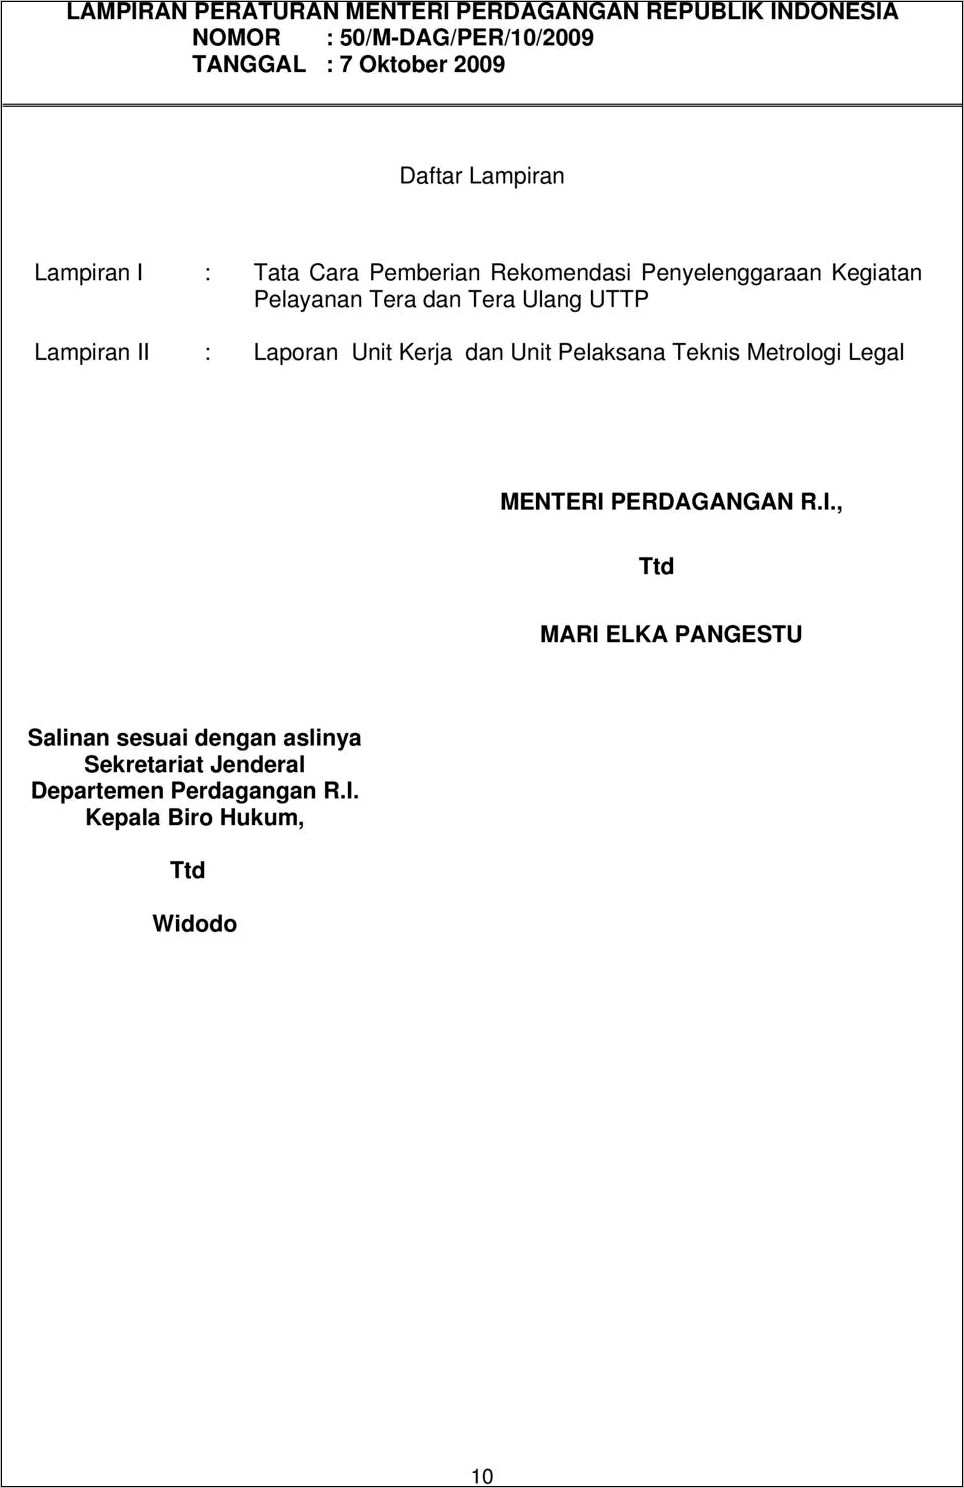 Contoh Surat Pernyataan Kementerian Perdagangan